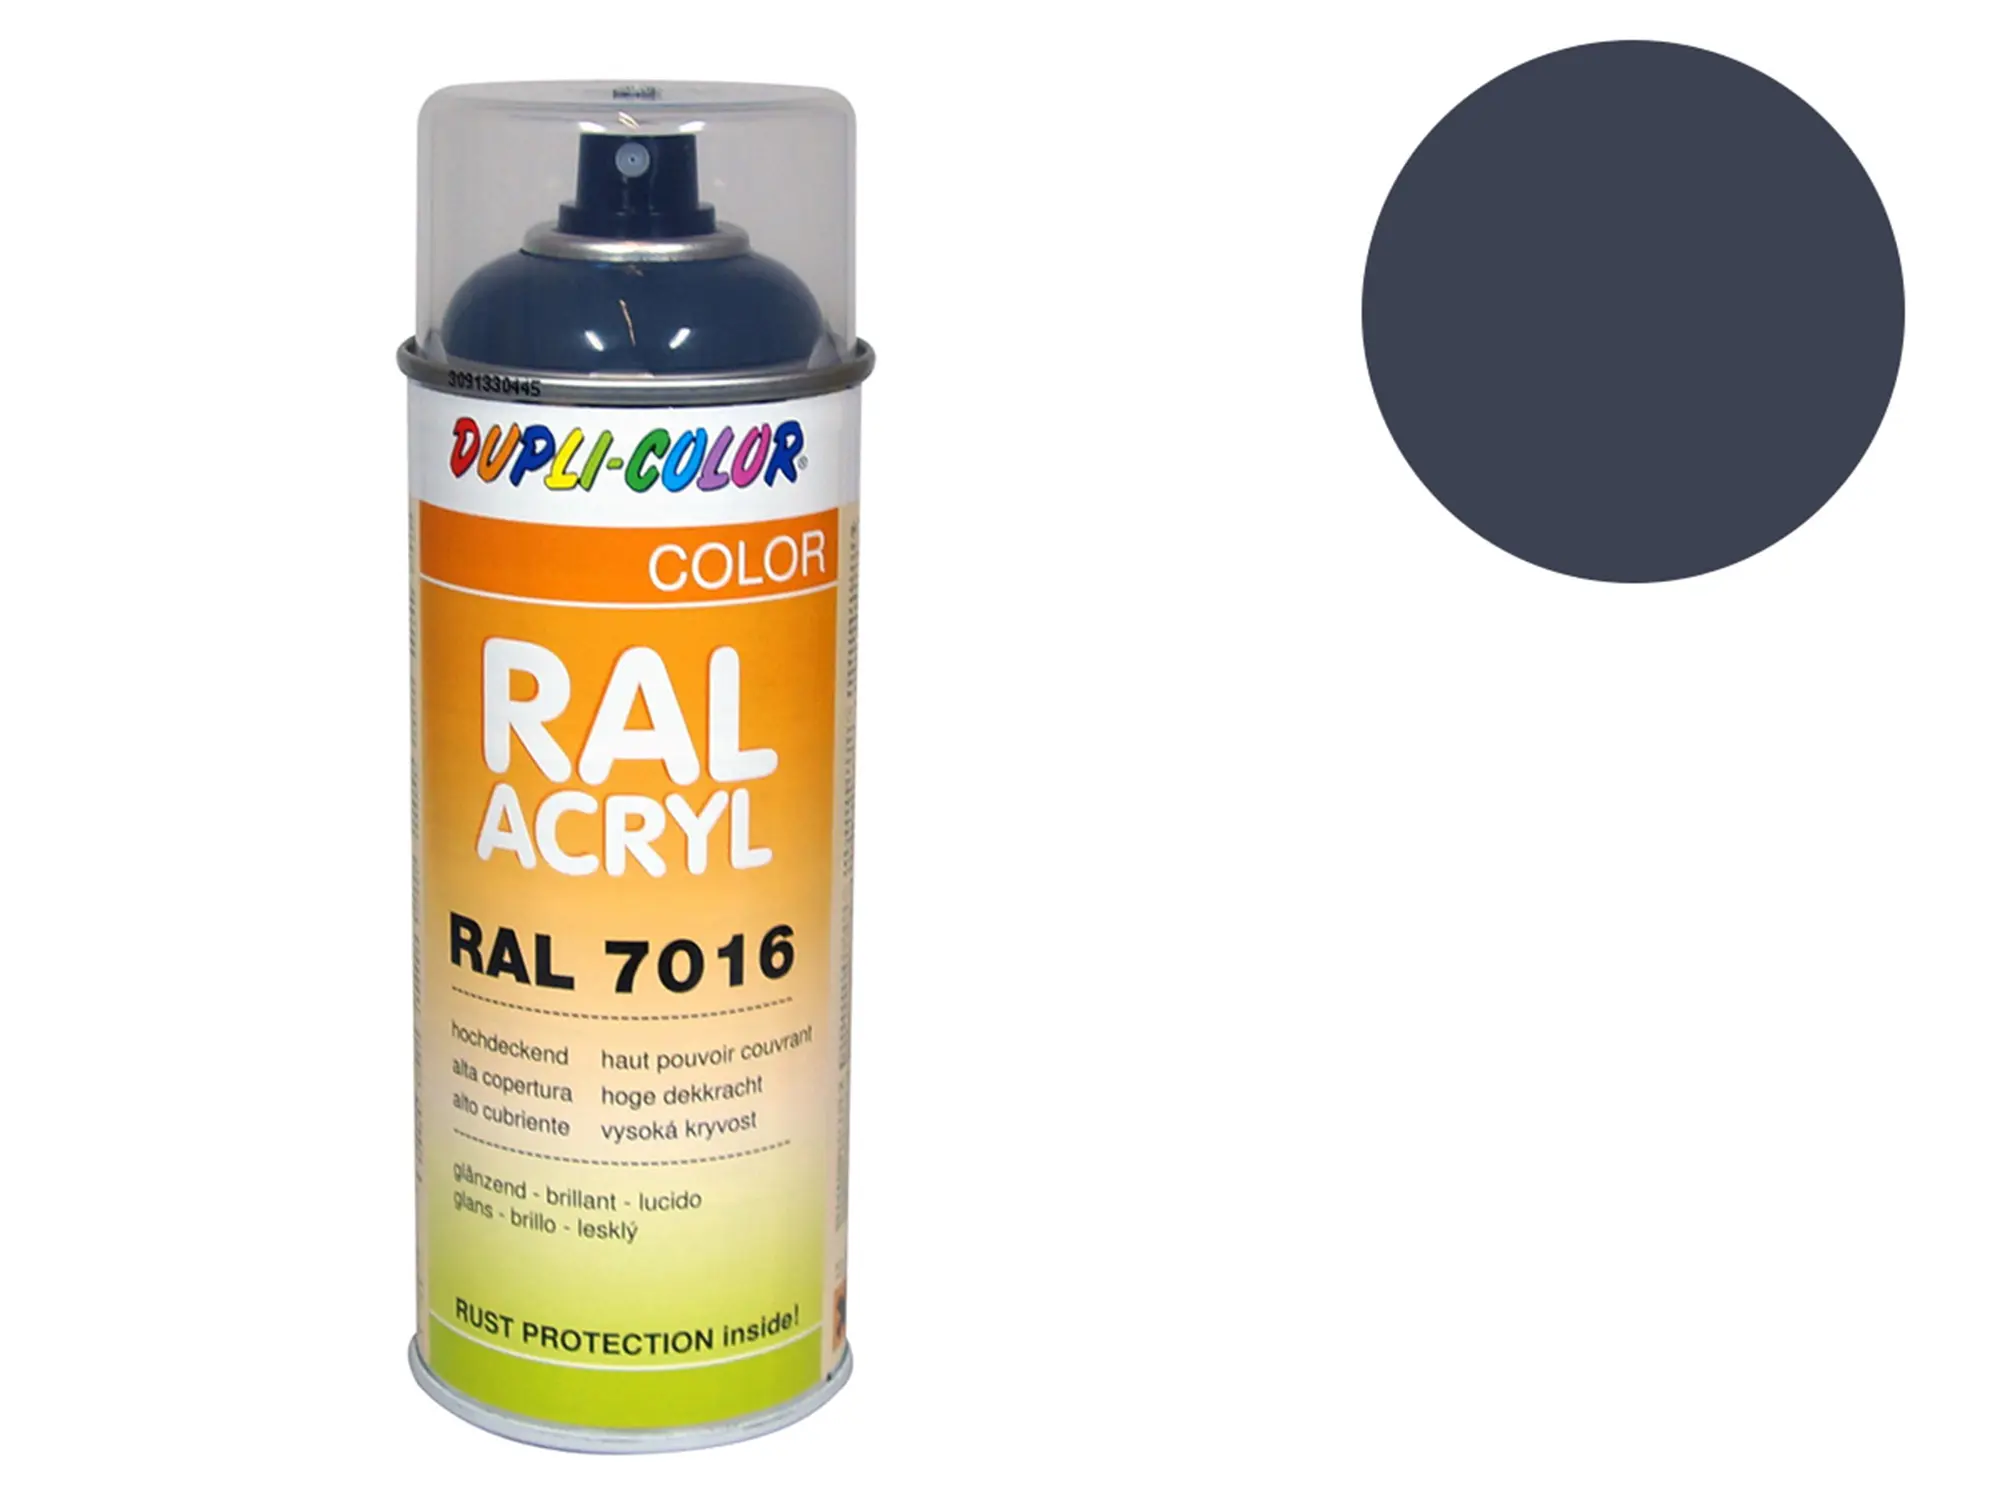 Dupli-Color Acryl-Spray RAL 7015 schiefergrau, glänzend - 400 ml, Art.-Nr.: 10064839 - Bild 1